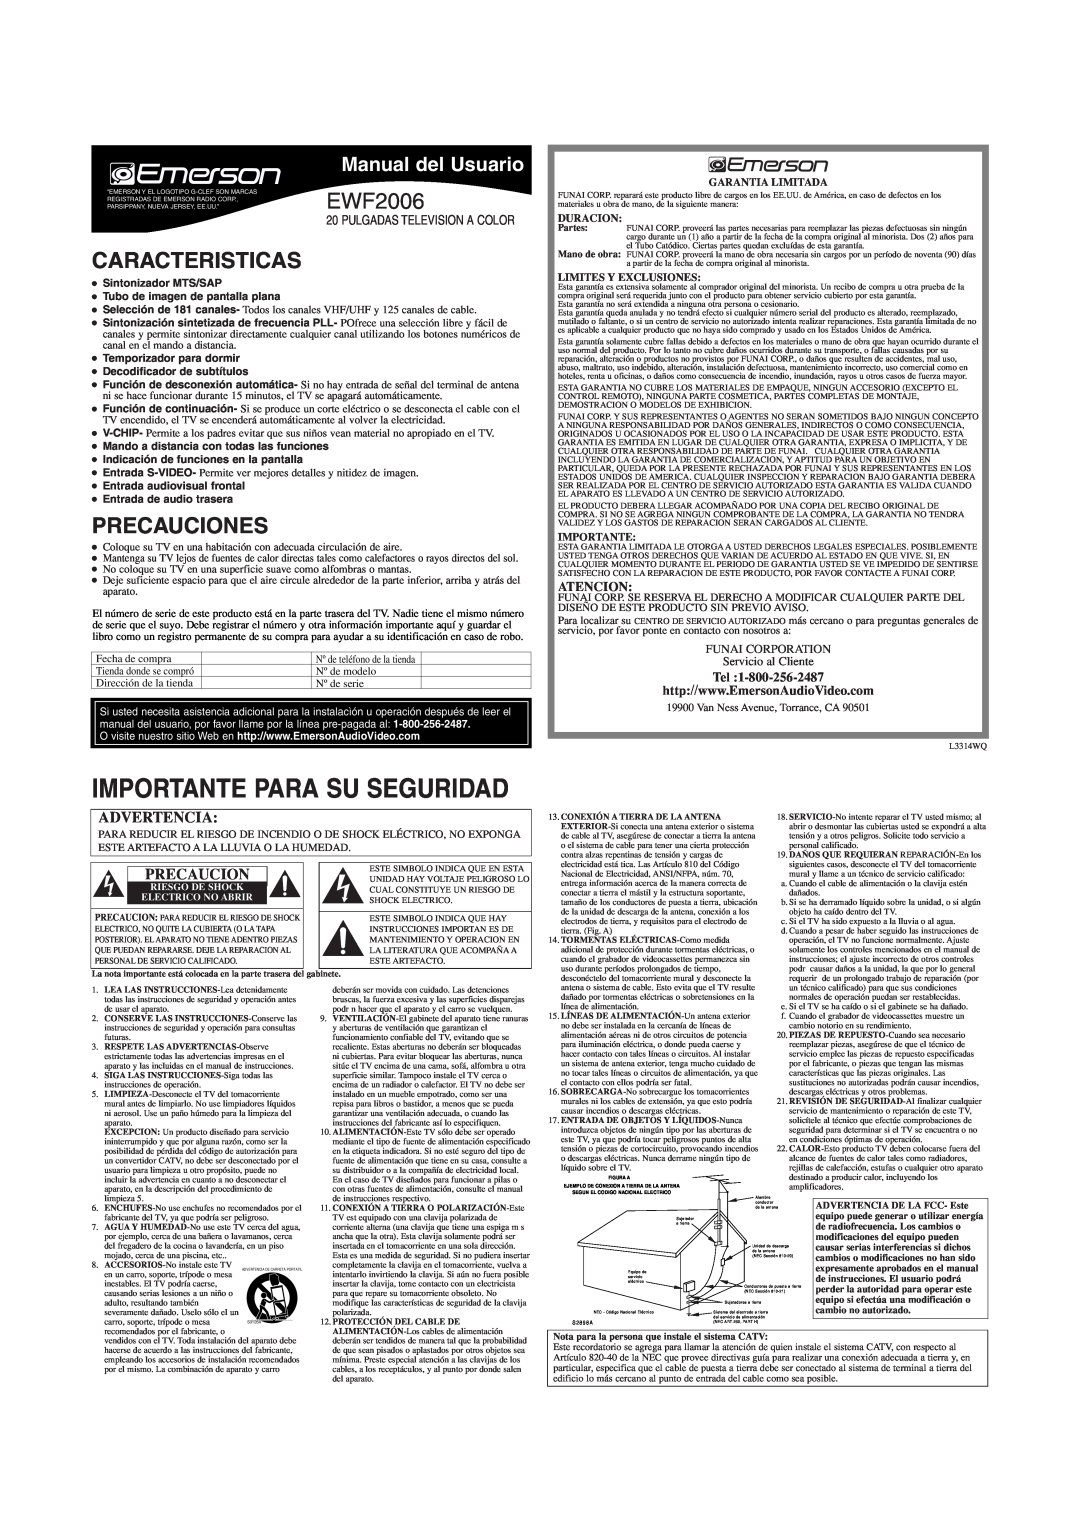 Emerson EWF2006 Caracteristicas, Precauciones, Manual del Usuario, Atencion, FUNAI CORPORATION Servicio al Cliente 